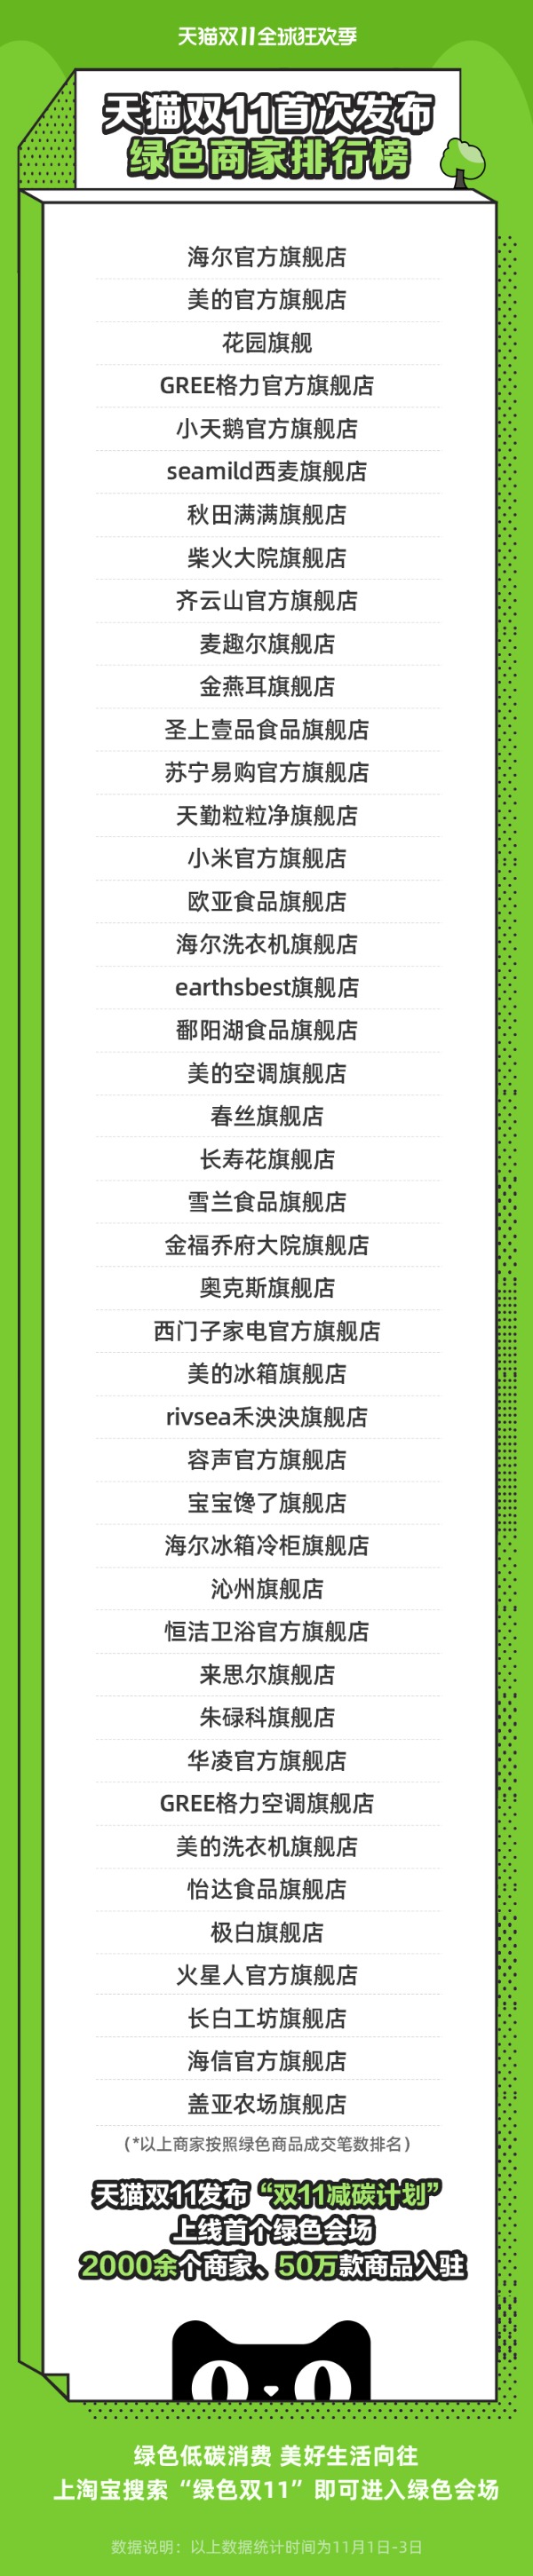 天猫双11发布首个绿色业务榜单天猫双11首次发布绿色商家名单